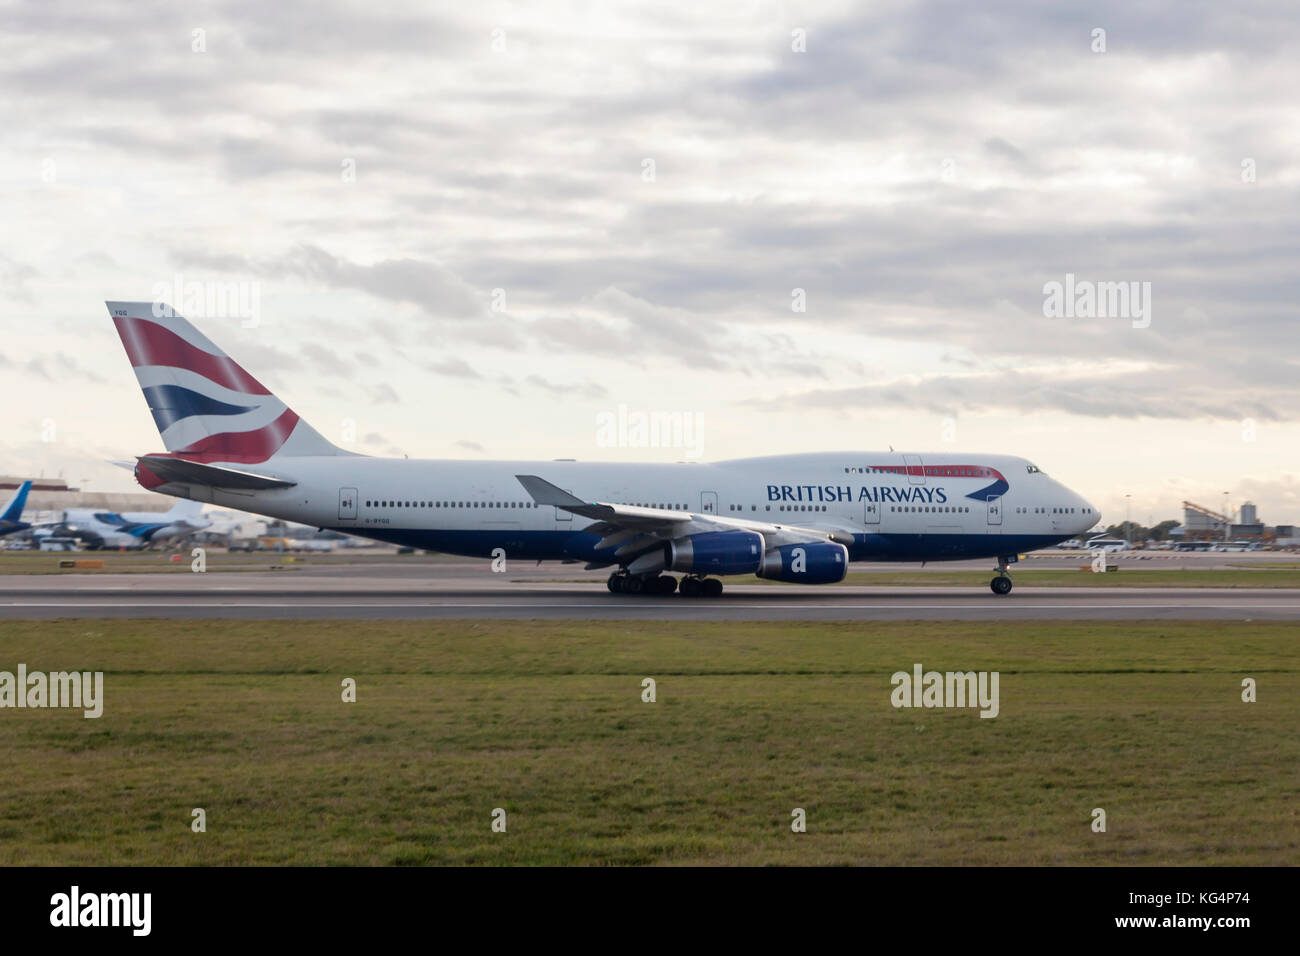 Londres, UK - oct 10, 2017 : british airways boeing 747 sur la piste de l'aéroport international Heathrow de Londres Banque D'Images